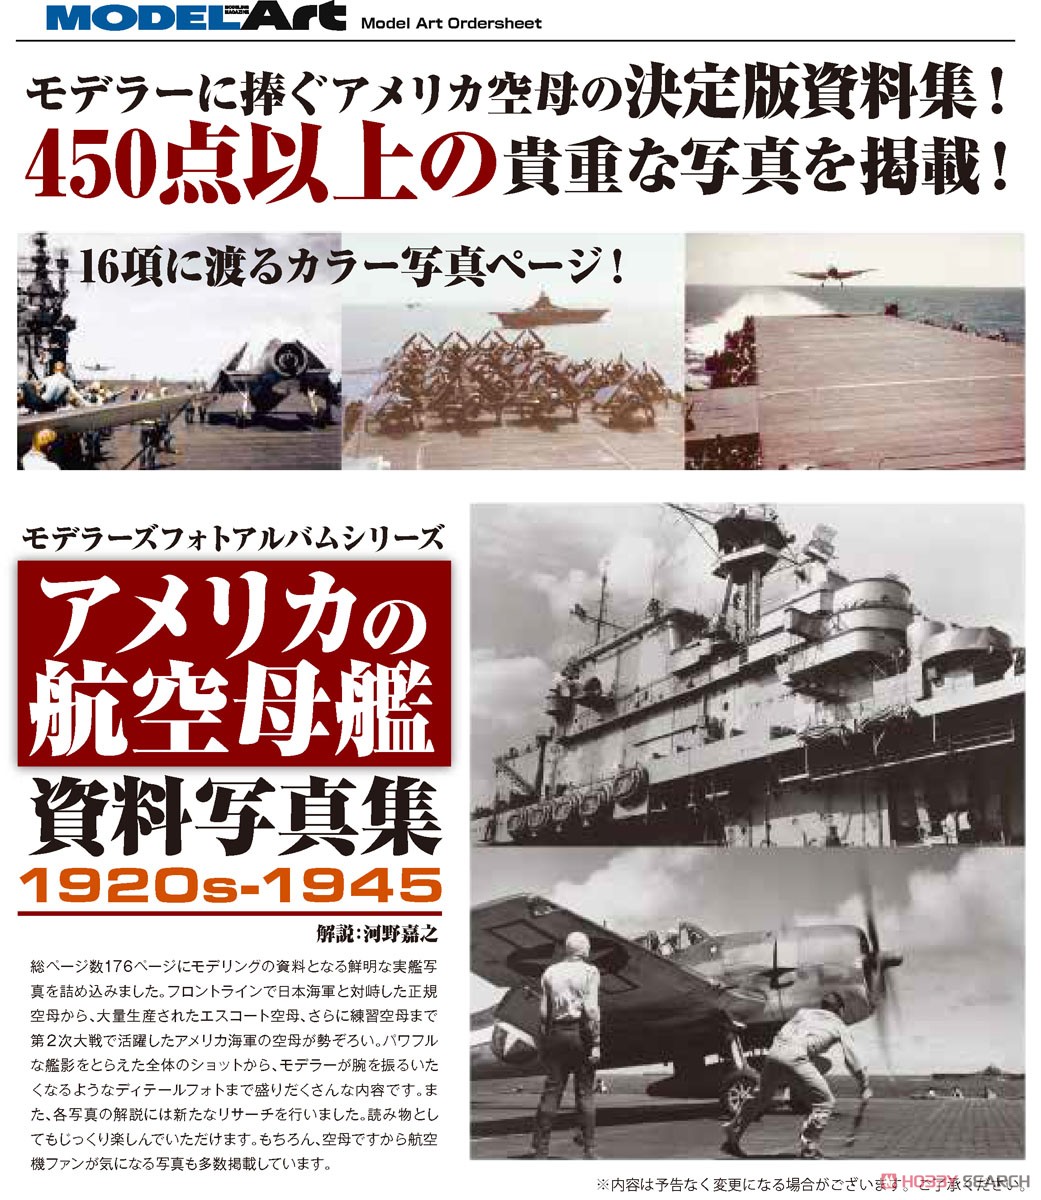 艦船模型スペシャル別冊 ネイバル・ファクト・アンド・ヒストリー・シリーズ アメリカの航空母艦 資料写真集1920s-1945 (書籍) その他の画像1